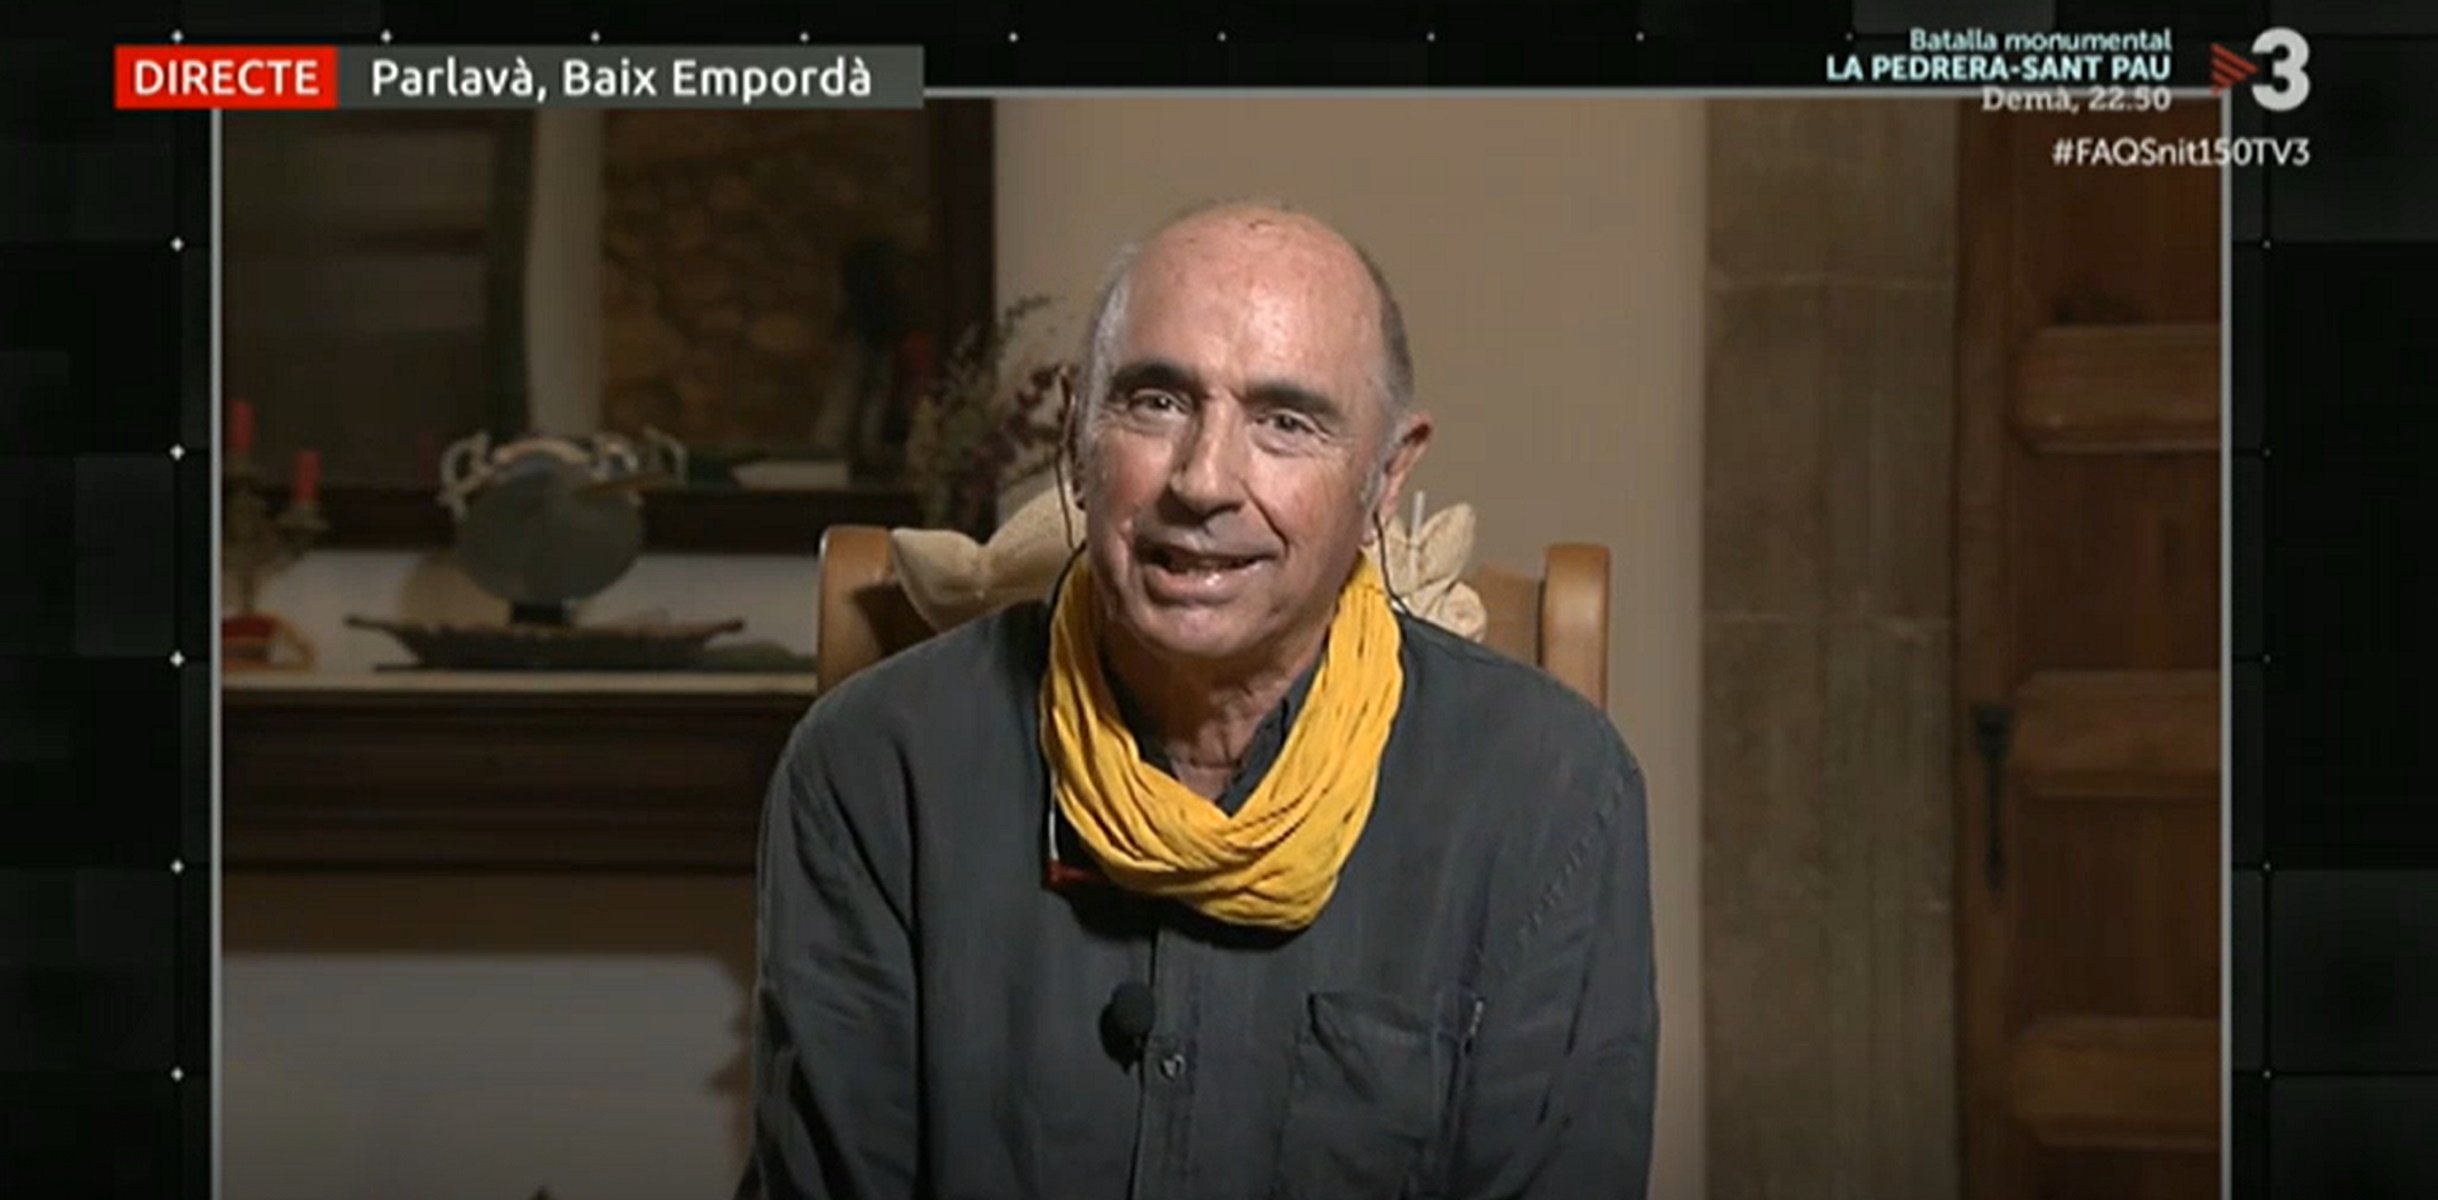 Pal monumental de Lluís Llach als informatius de TV3: "es pot dir que...?"